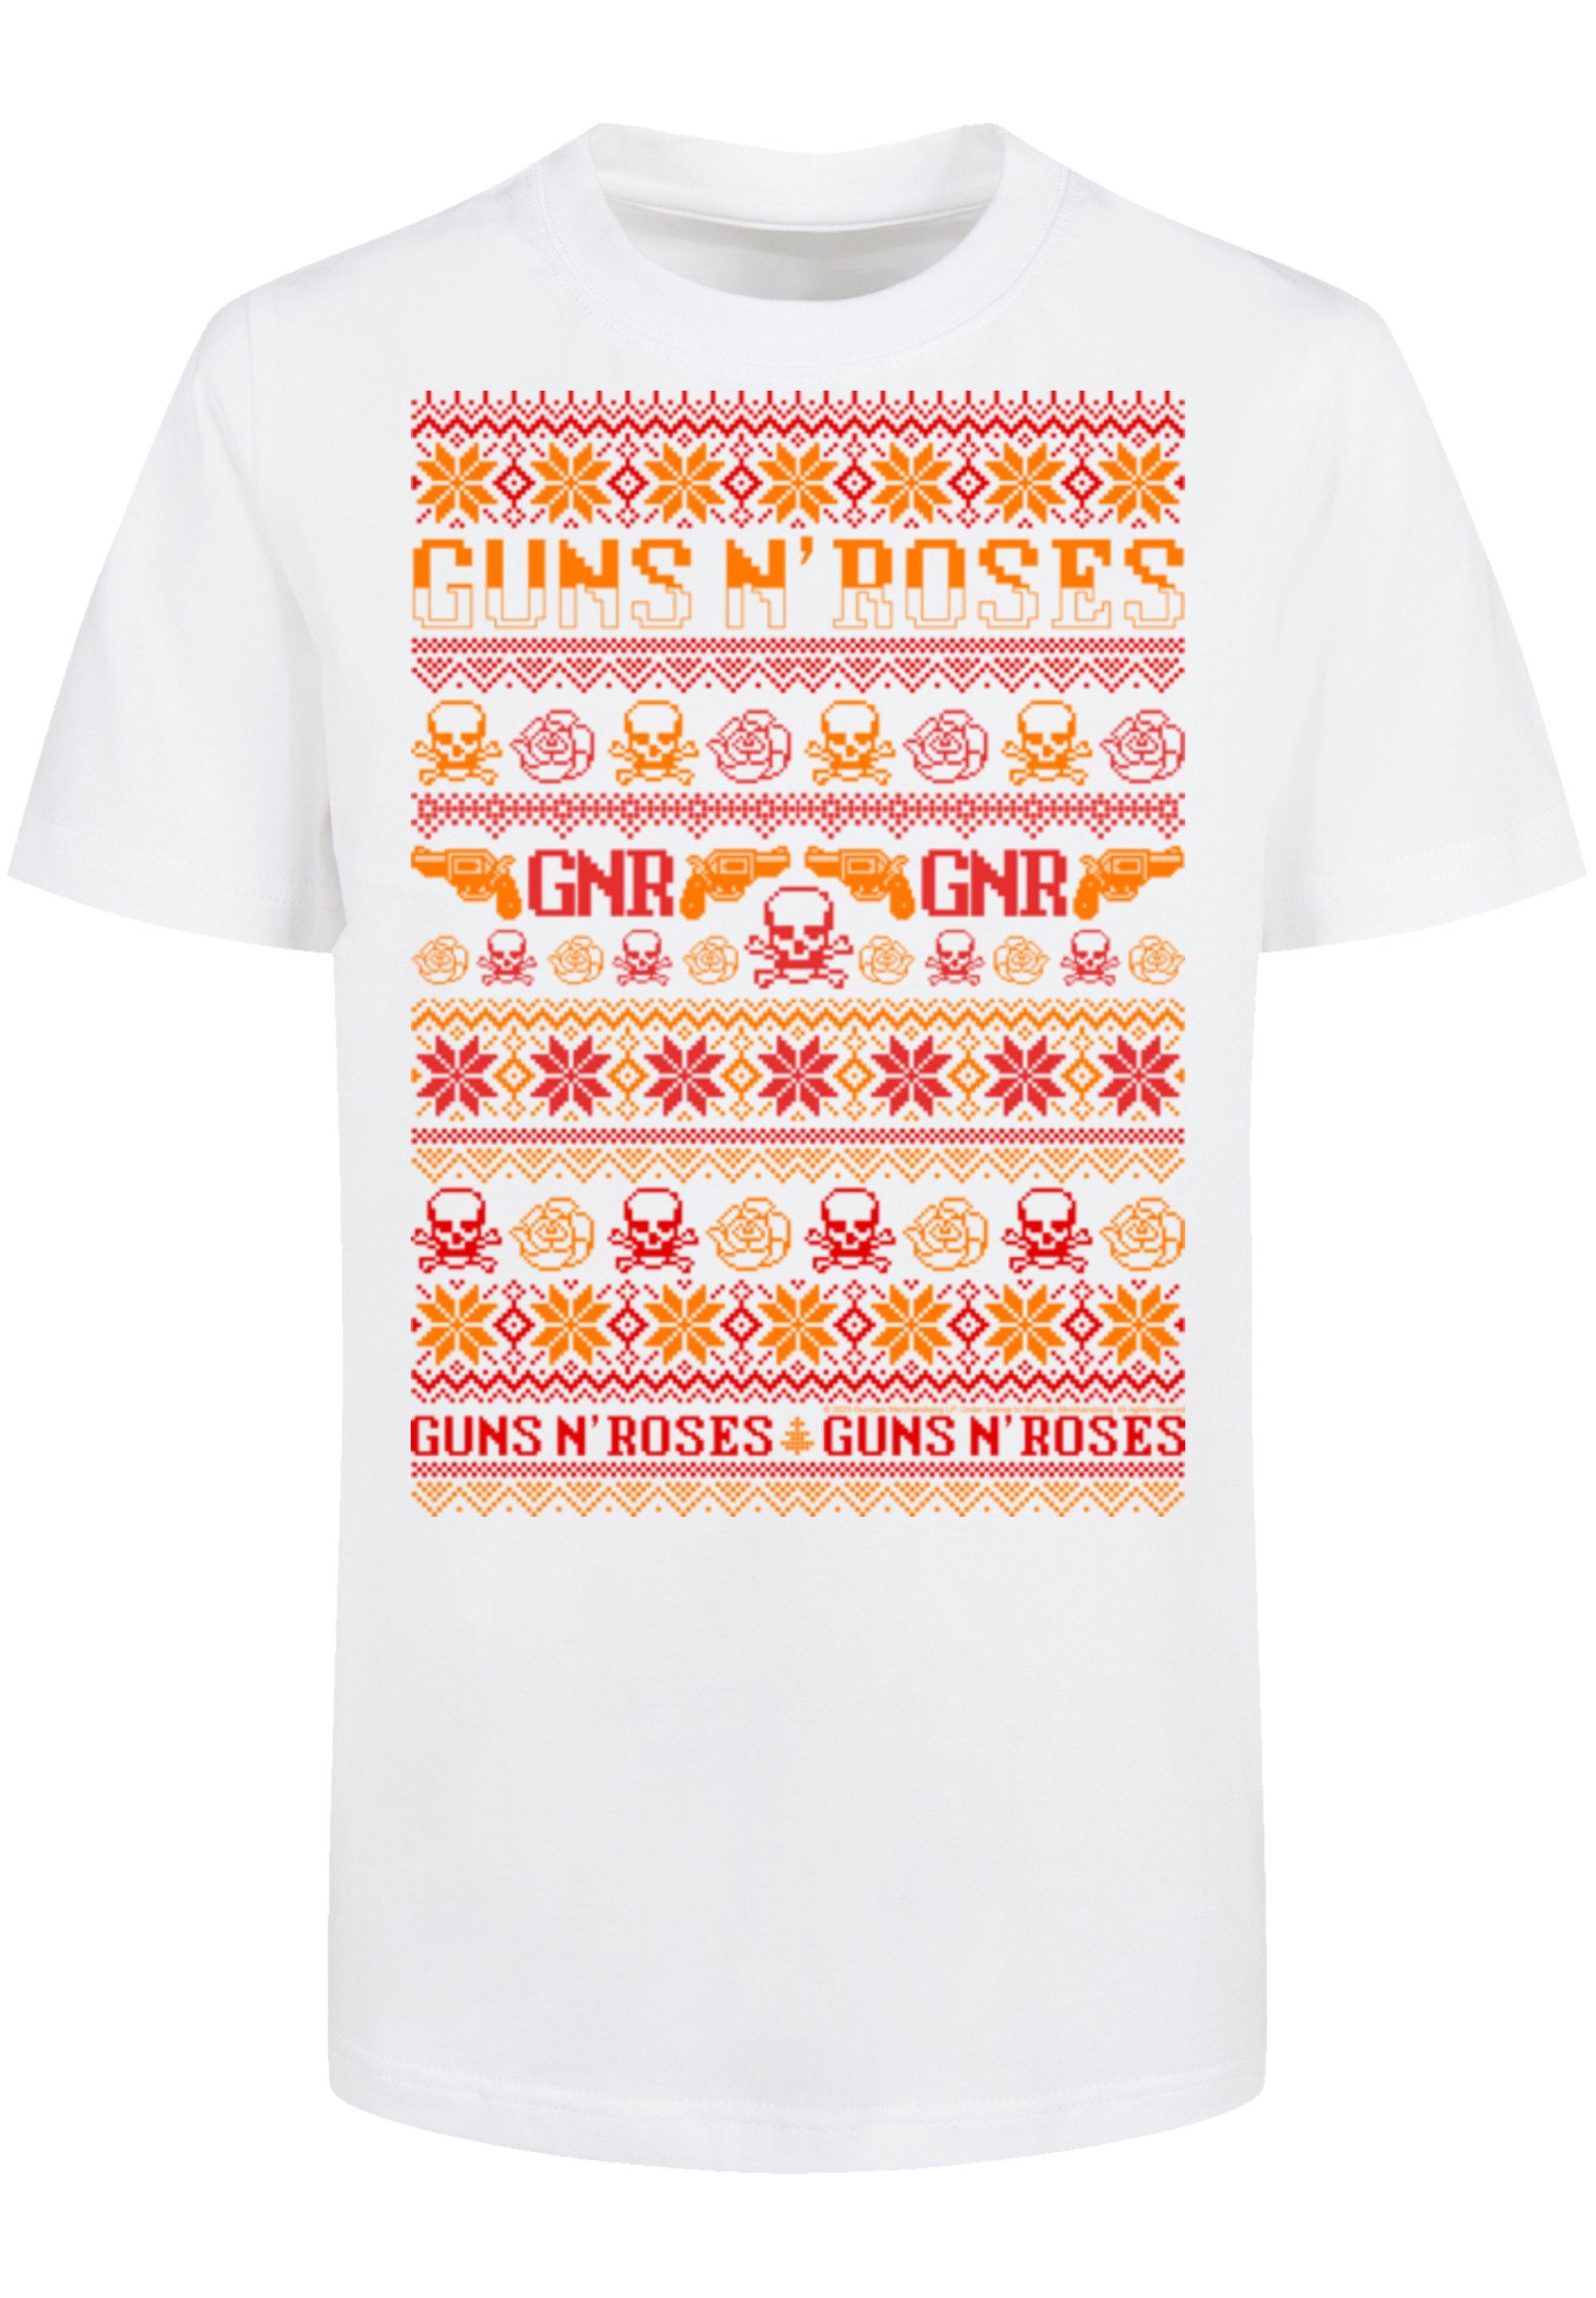 F4NT4STIC T-Shirt Guns n' Roses Weihnachten Christmas Musik,Band,Logo, Sehr  weicher Baumwollstoff mit hohem Tragekomfort